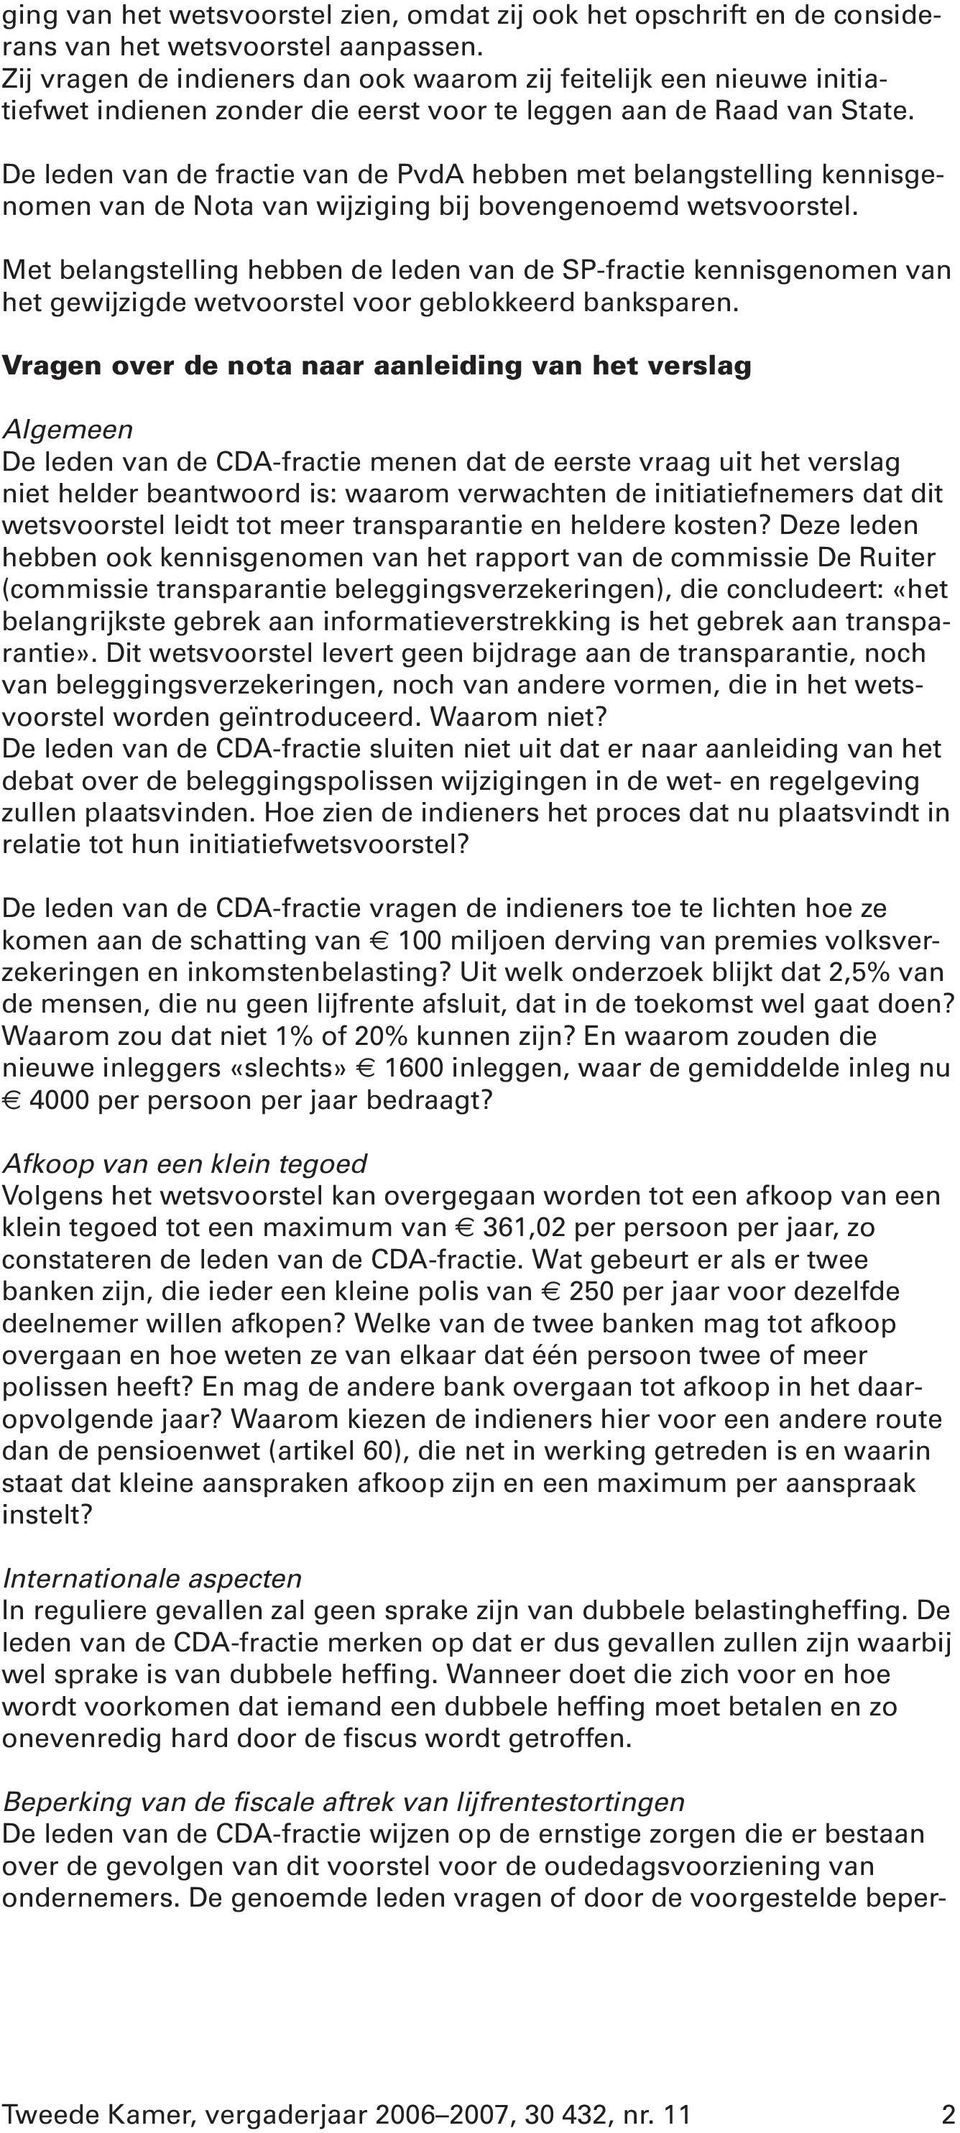 De leden van de fractie van de PvdA hebben met belangstelling kennisgenomen van de Nota van wijziging bij bovengenoemd wetsvoorstel.